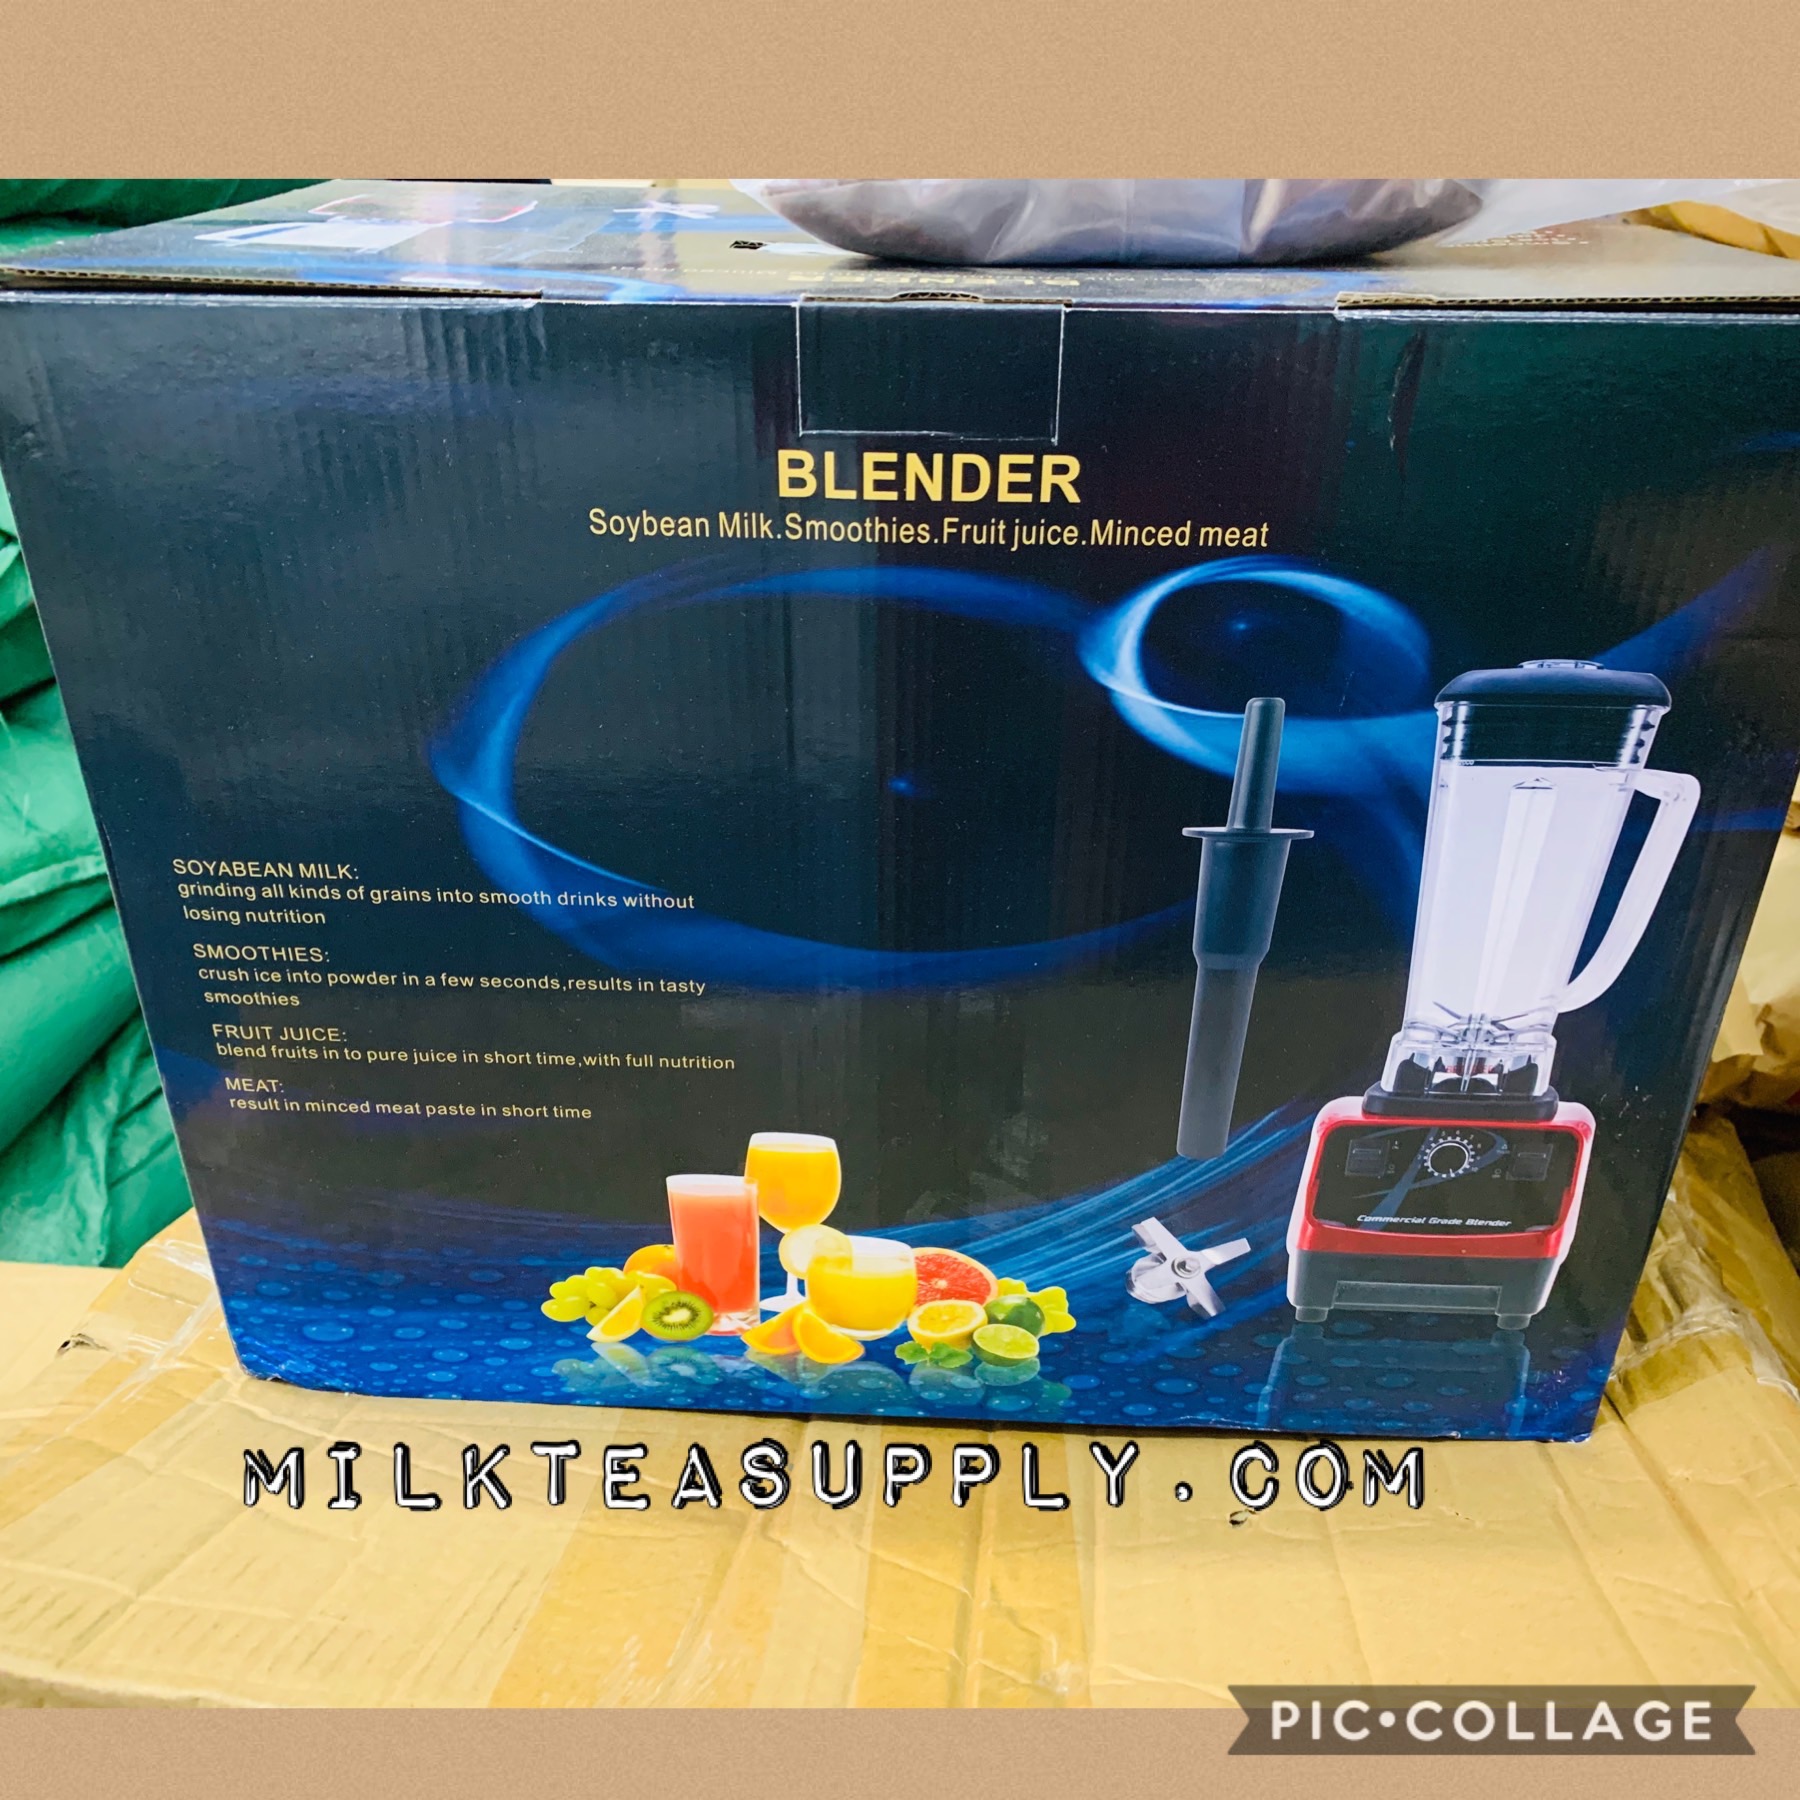 4 IN 1 BLENDER – Milk Tea Supply & Equipment